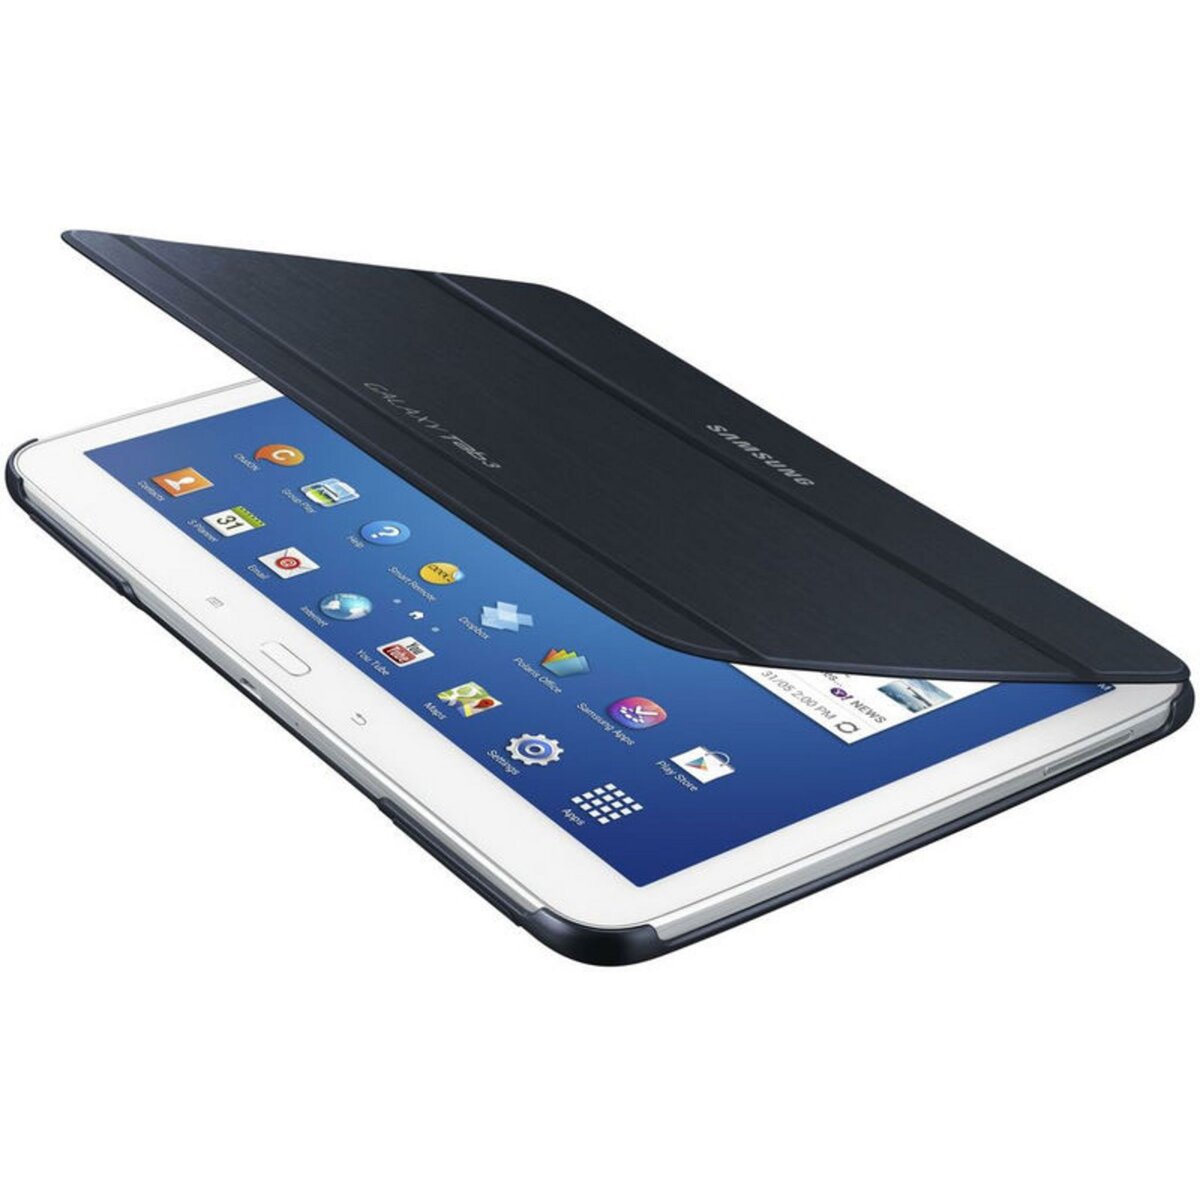 SAMSUNG housse pour tablette Etui Rabat Noir pour Galaxy Tab 3 10.1.pouces